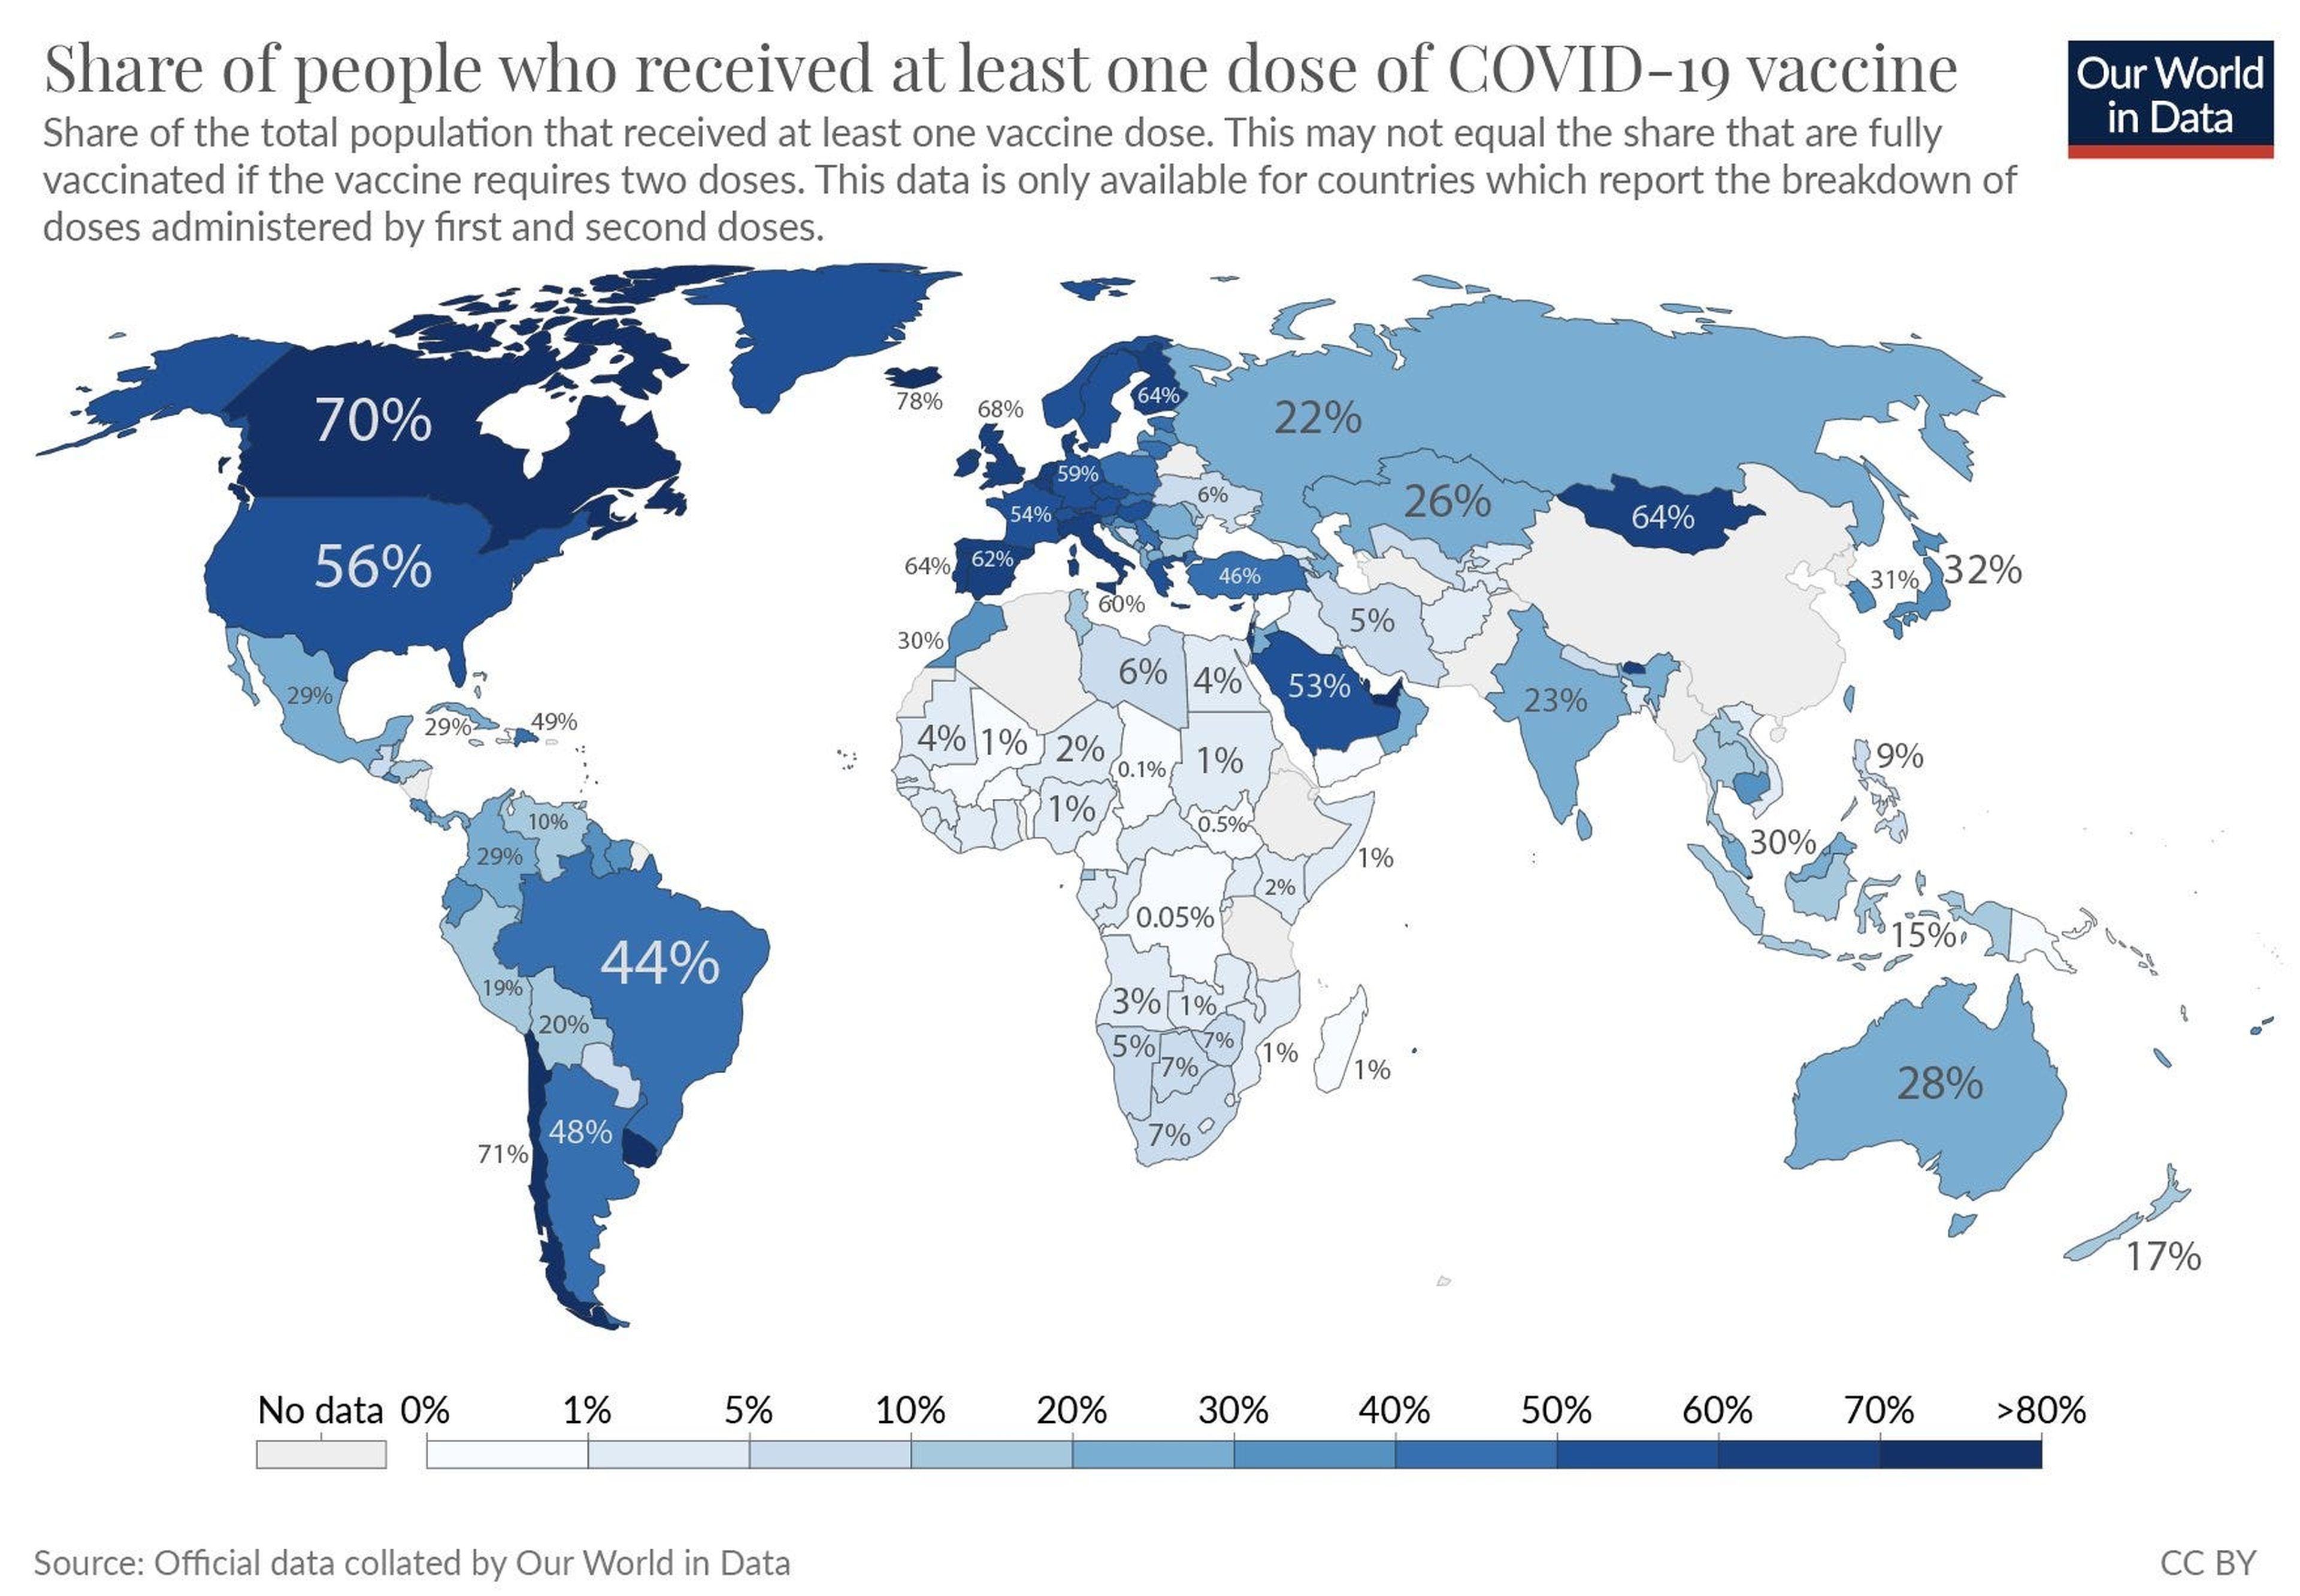 El mapa muestra la proporción de la población de cada país que ha recibido al menos una dosis de vacuna.